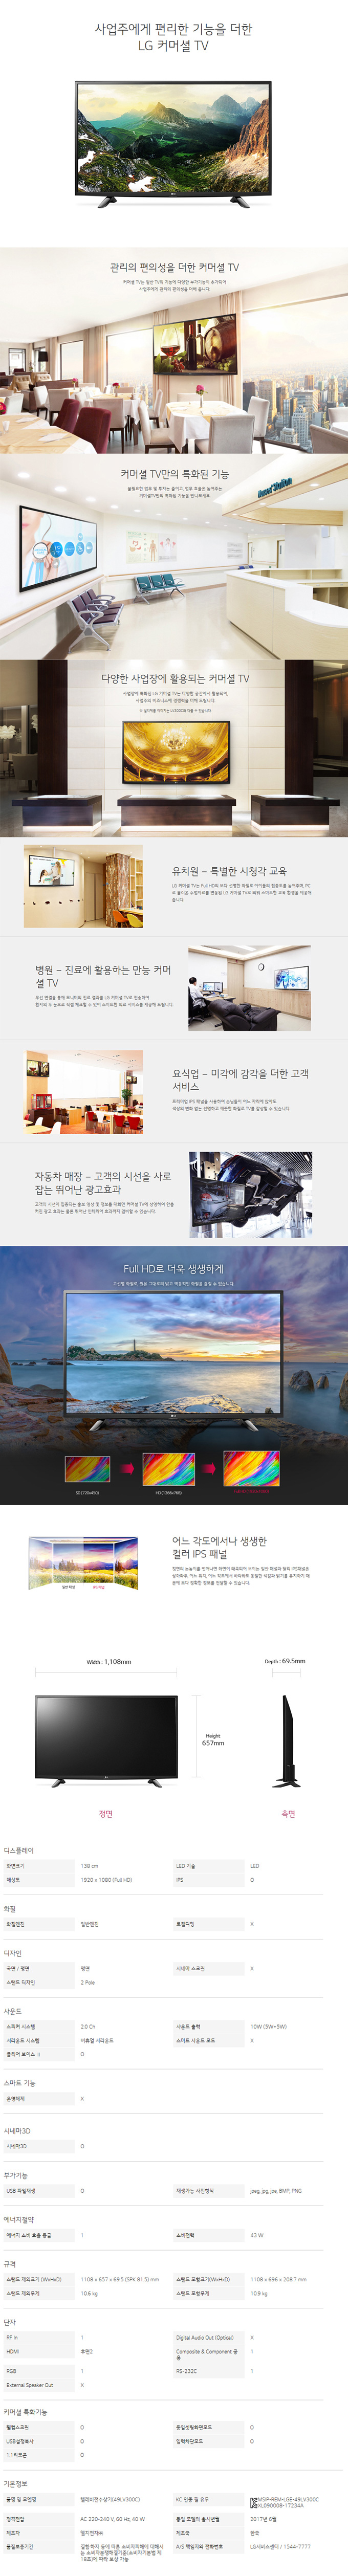 경기케이블 - LG 49인치 LED TV (49LV300C) 상세보기